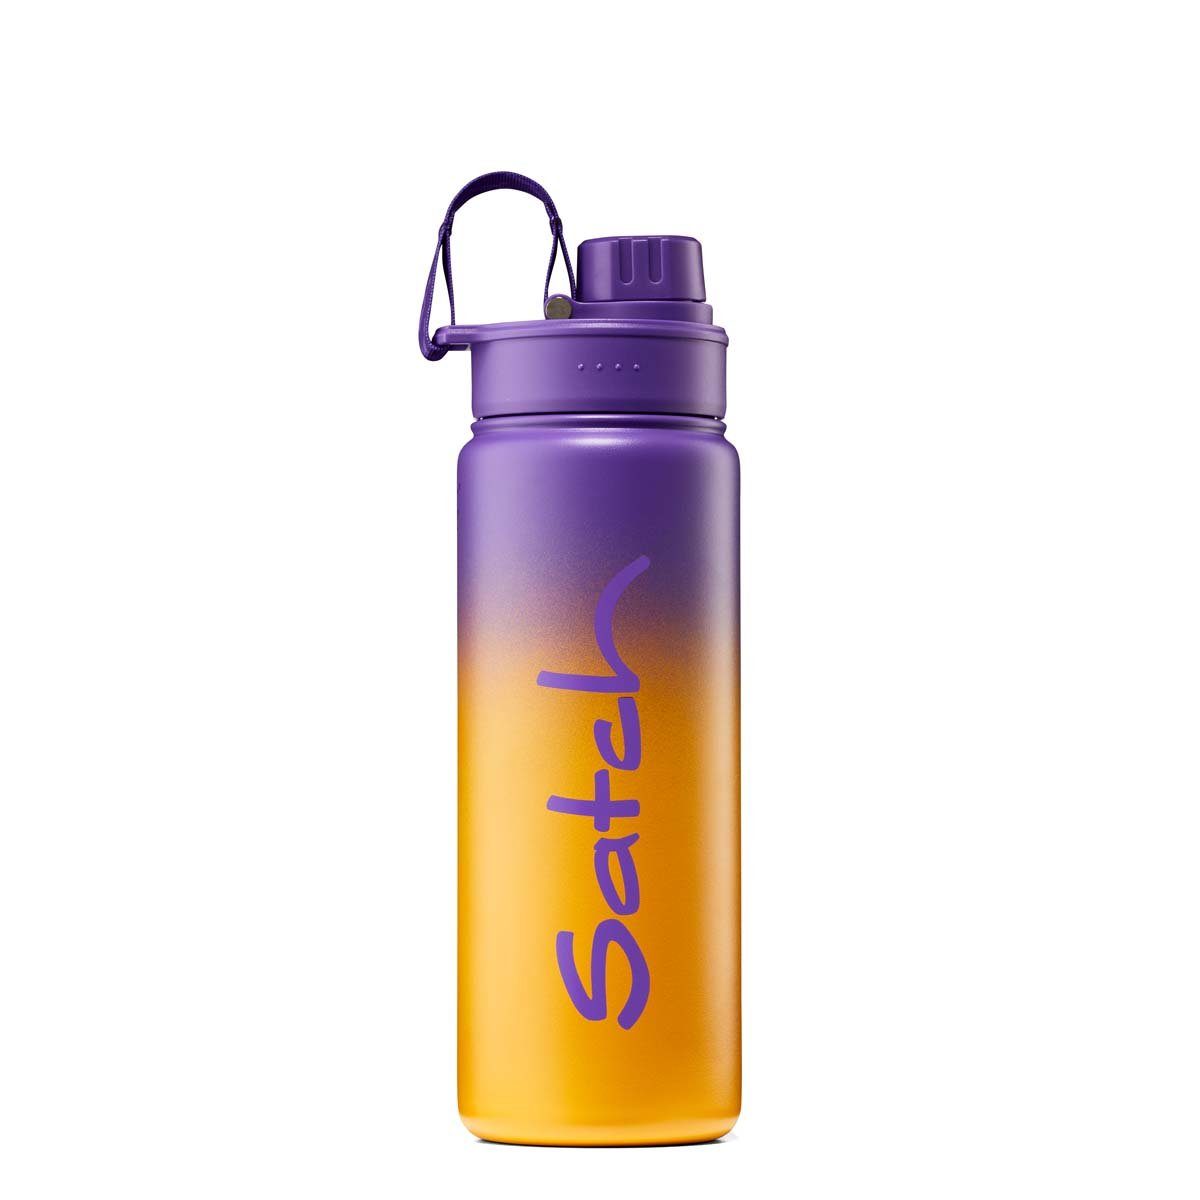 01017-90245-10 Trinkflasche Edelstahl-Trinkflasche, Graffiti Purple Satch BPA-frei